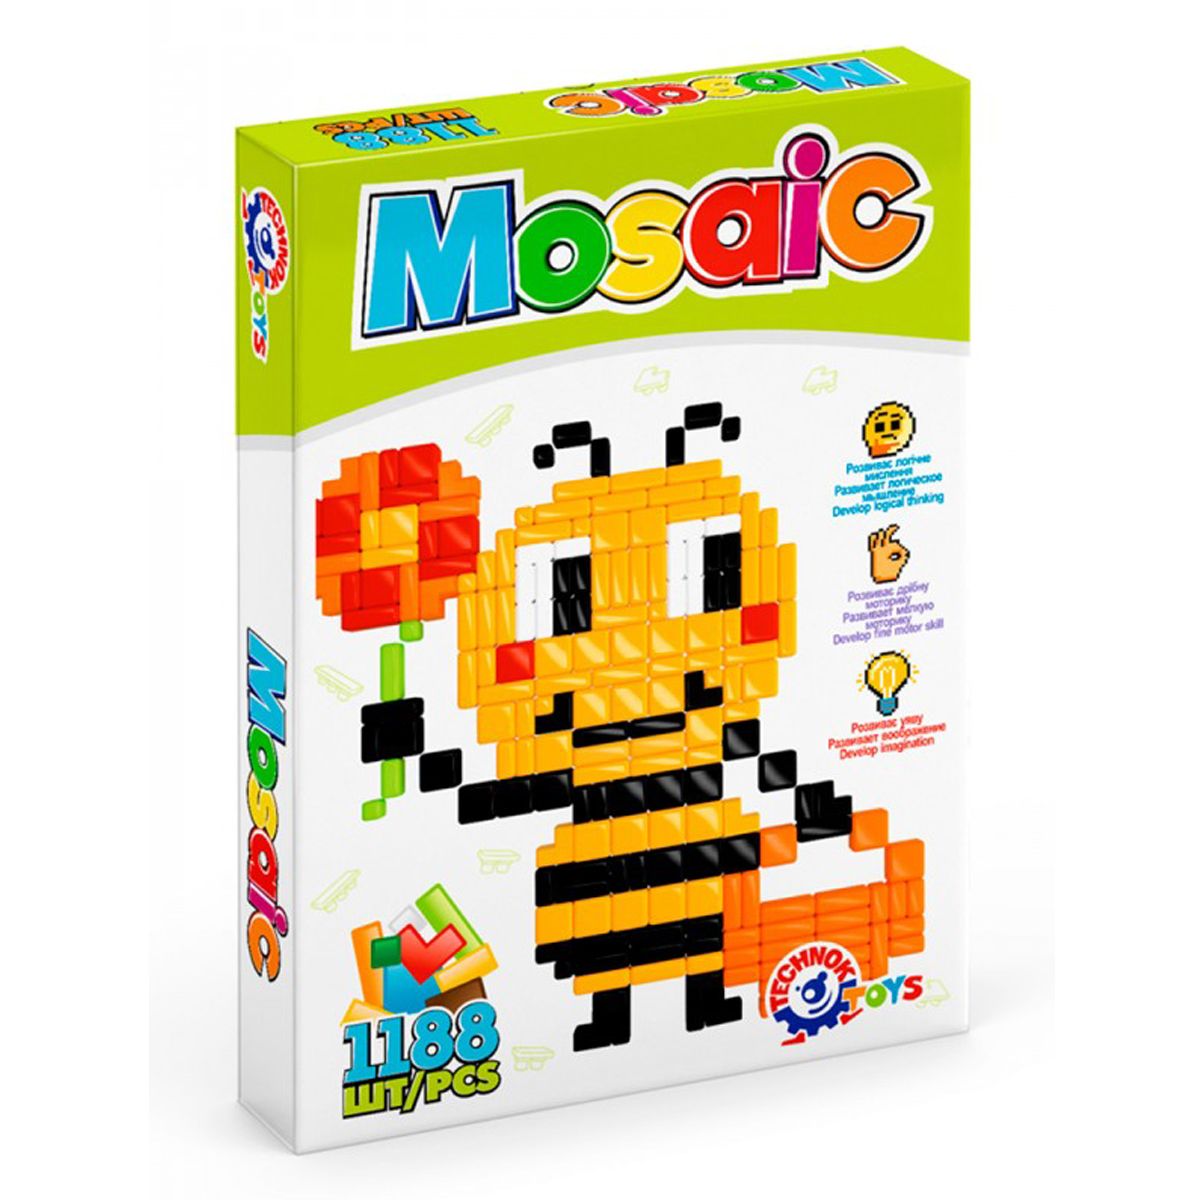 Игровой набор "Мозаика", 1188 дет